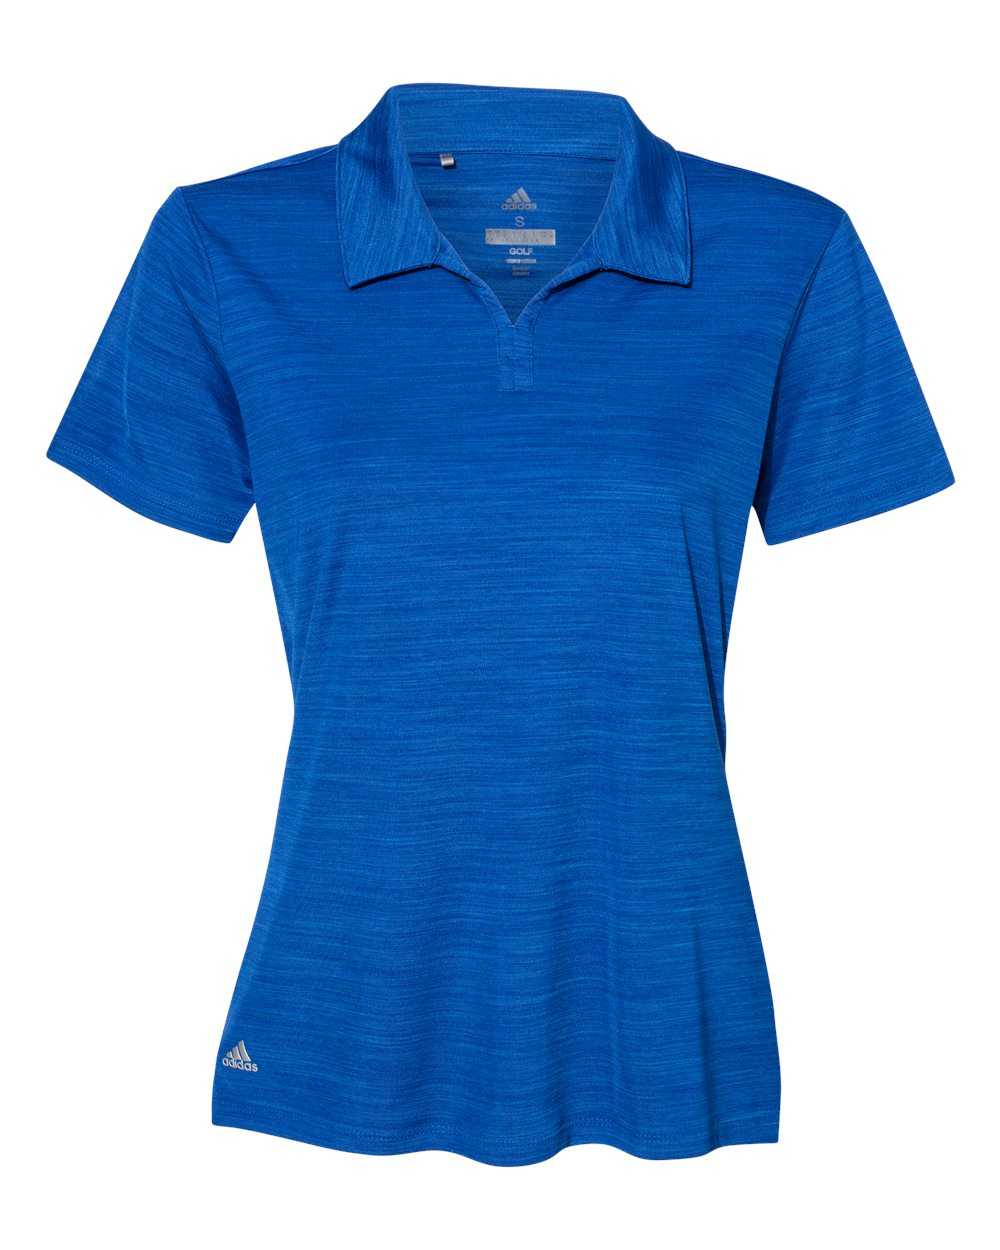 Adidas A403 Women&#39;s M??lange Sport Shirt - Collegiate Royal Melange - HIT a Double